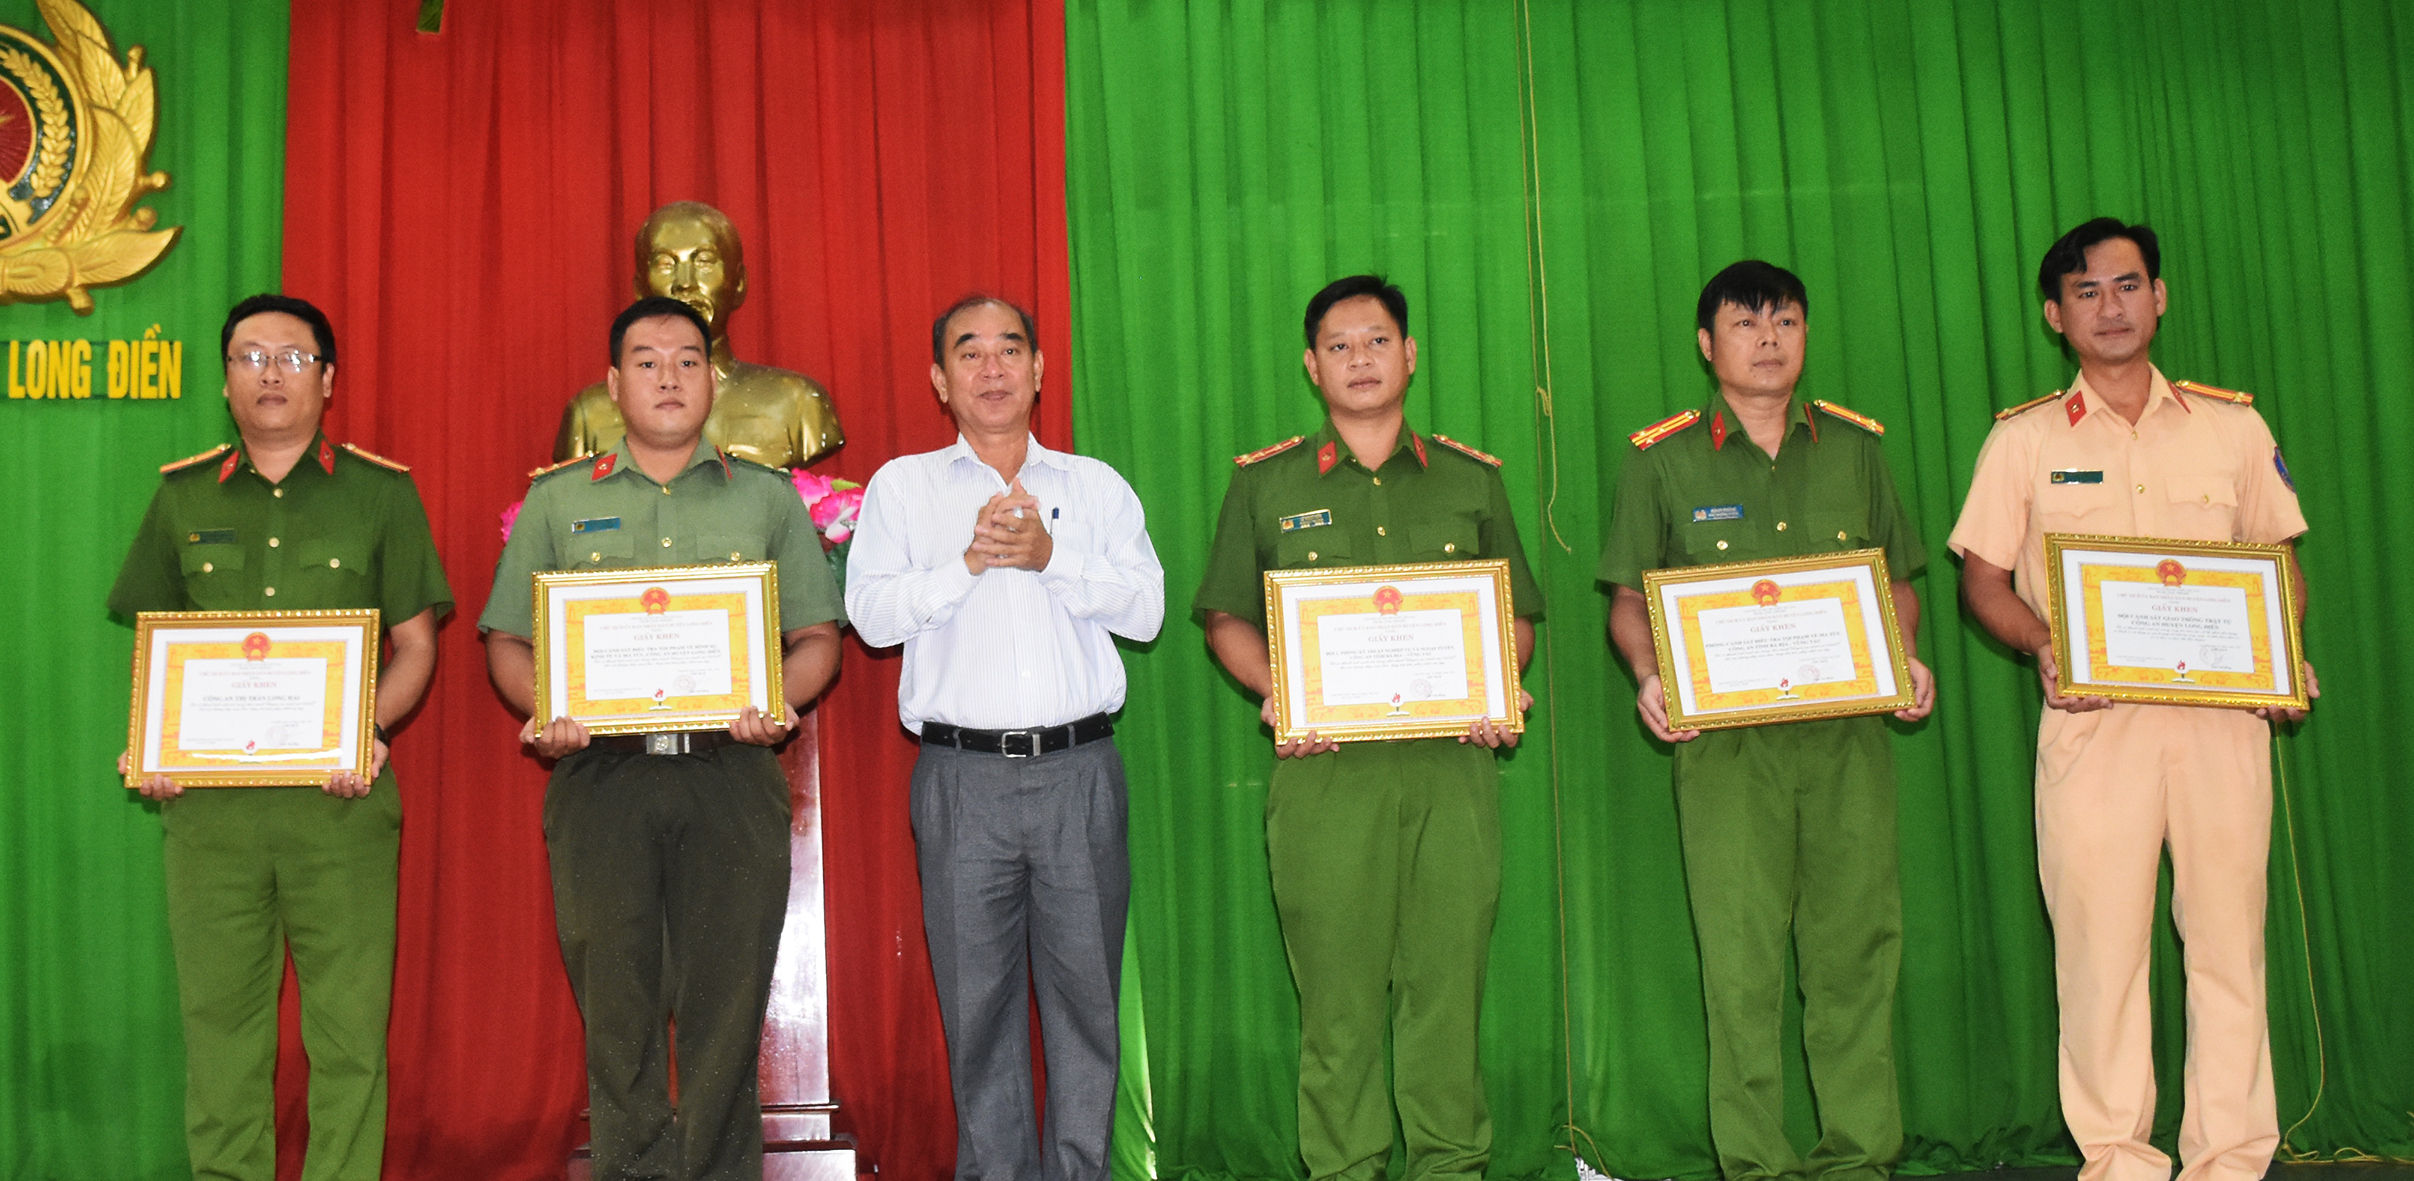 Ông Lâm Văn Hồng, Chủ tịch UBND huyện Long Điền trao khen thưởng cho các tập thể